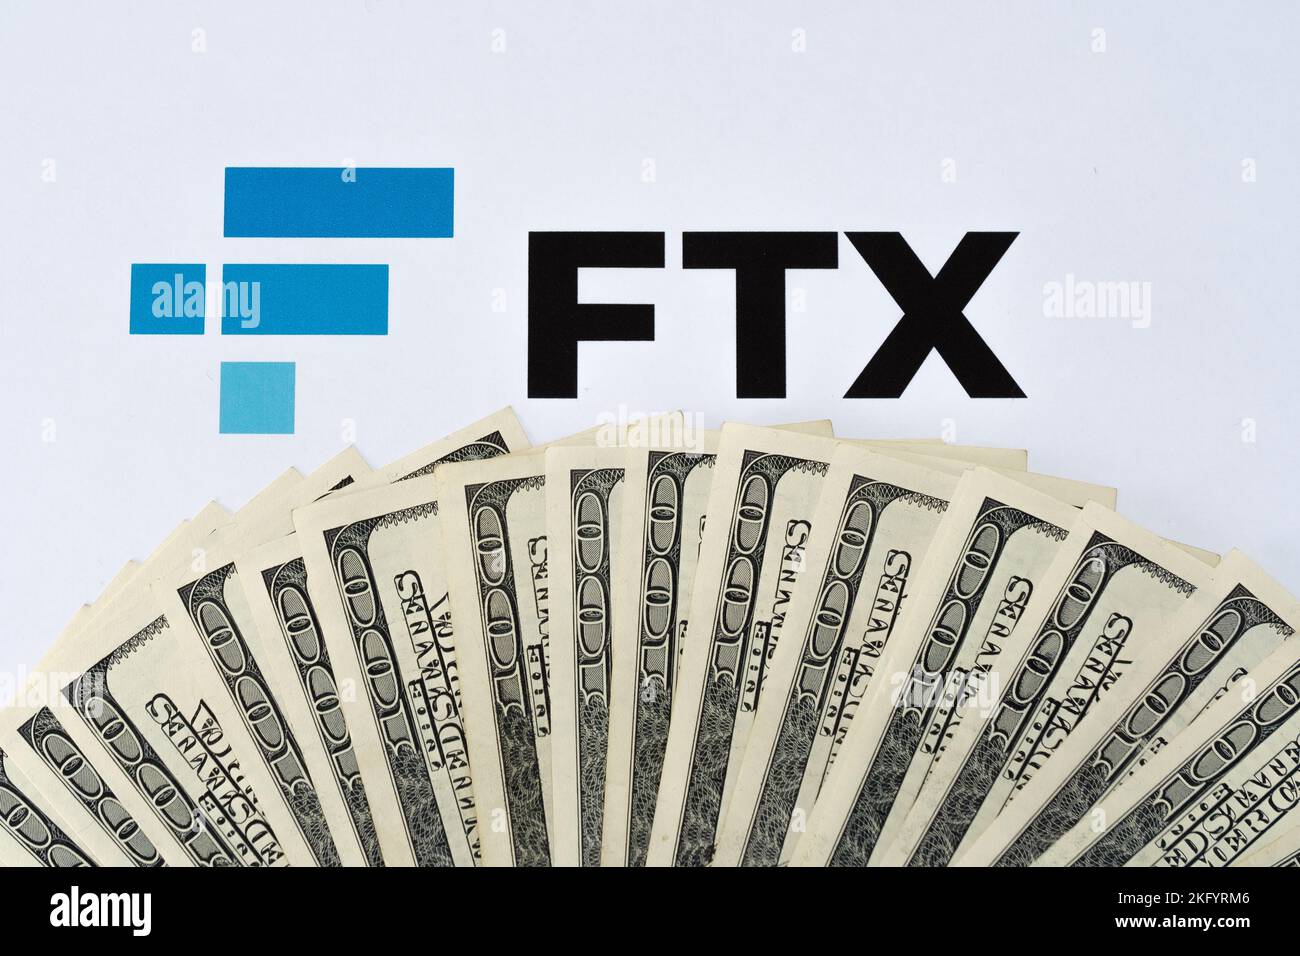 Le logo FTX crypto-monnaie est imprimé sur le papier et les billets en dollars américains qui l'entourent. Concept de faillite et de dette d'entreprise. Stafford, Royaume-Uni Banque D'Images